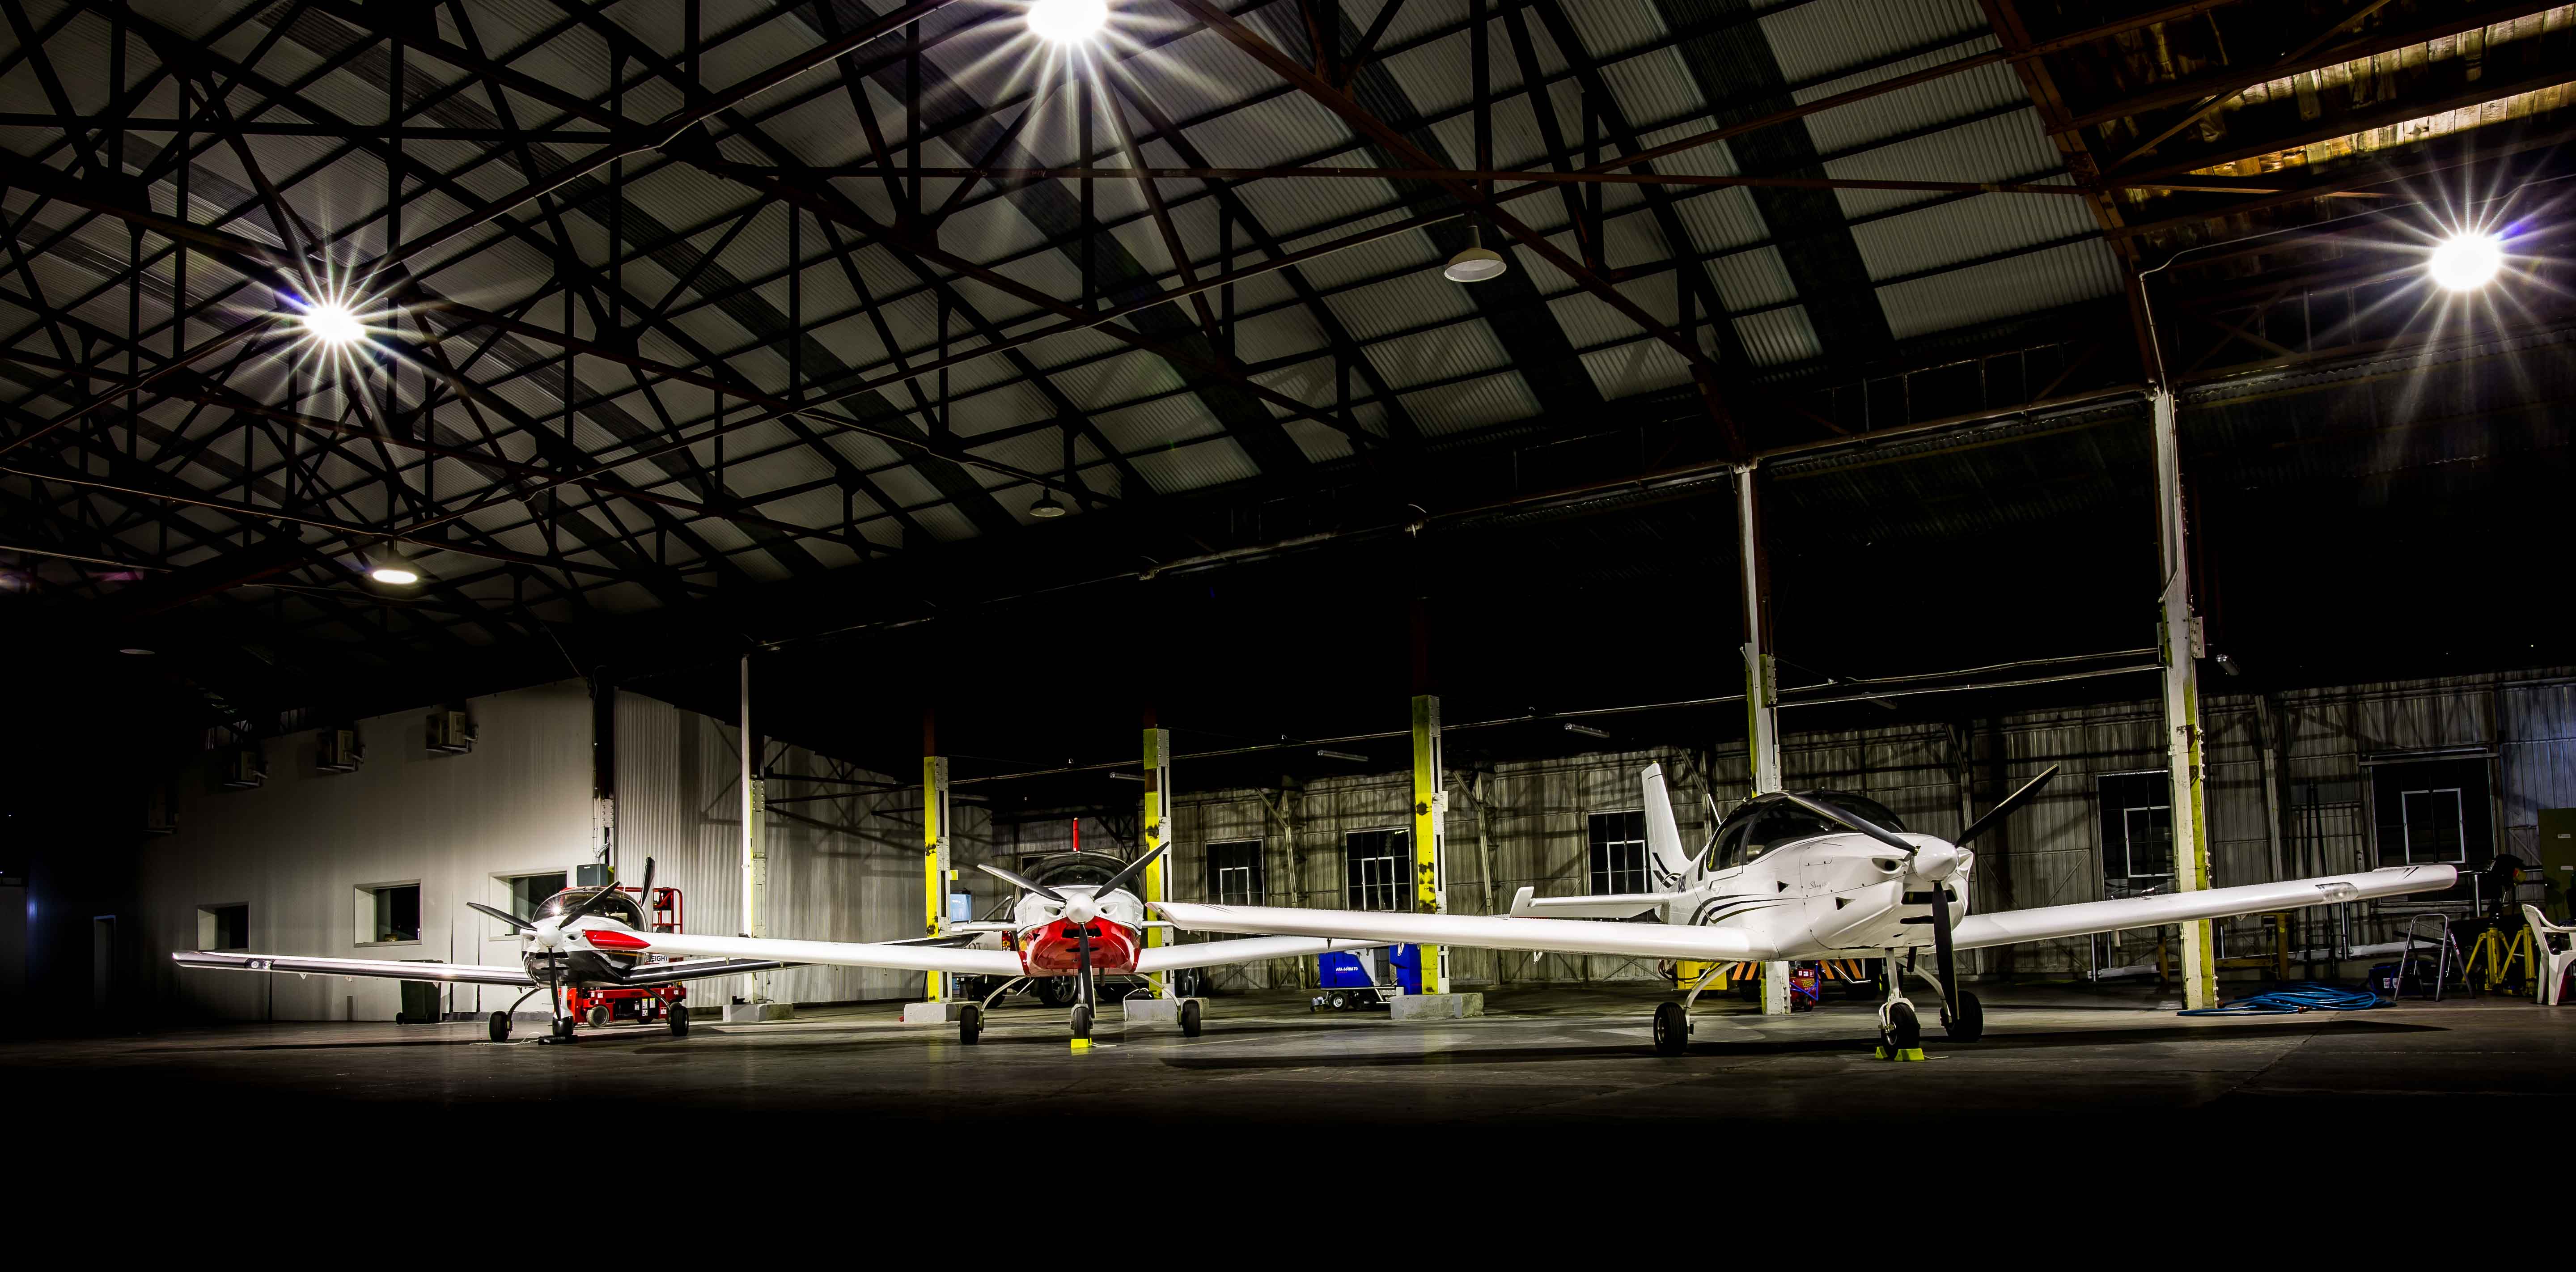 Sling 2 fleet in Hangar 5 Archerfield